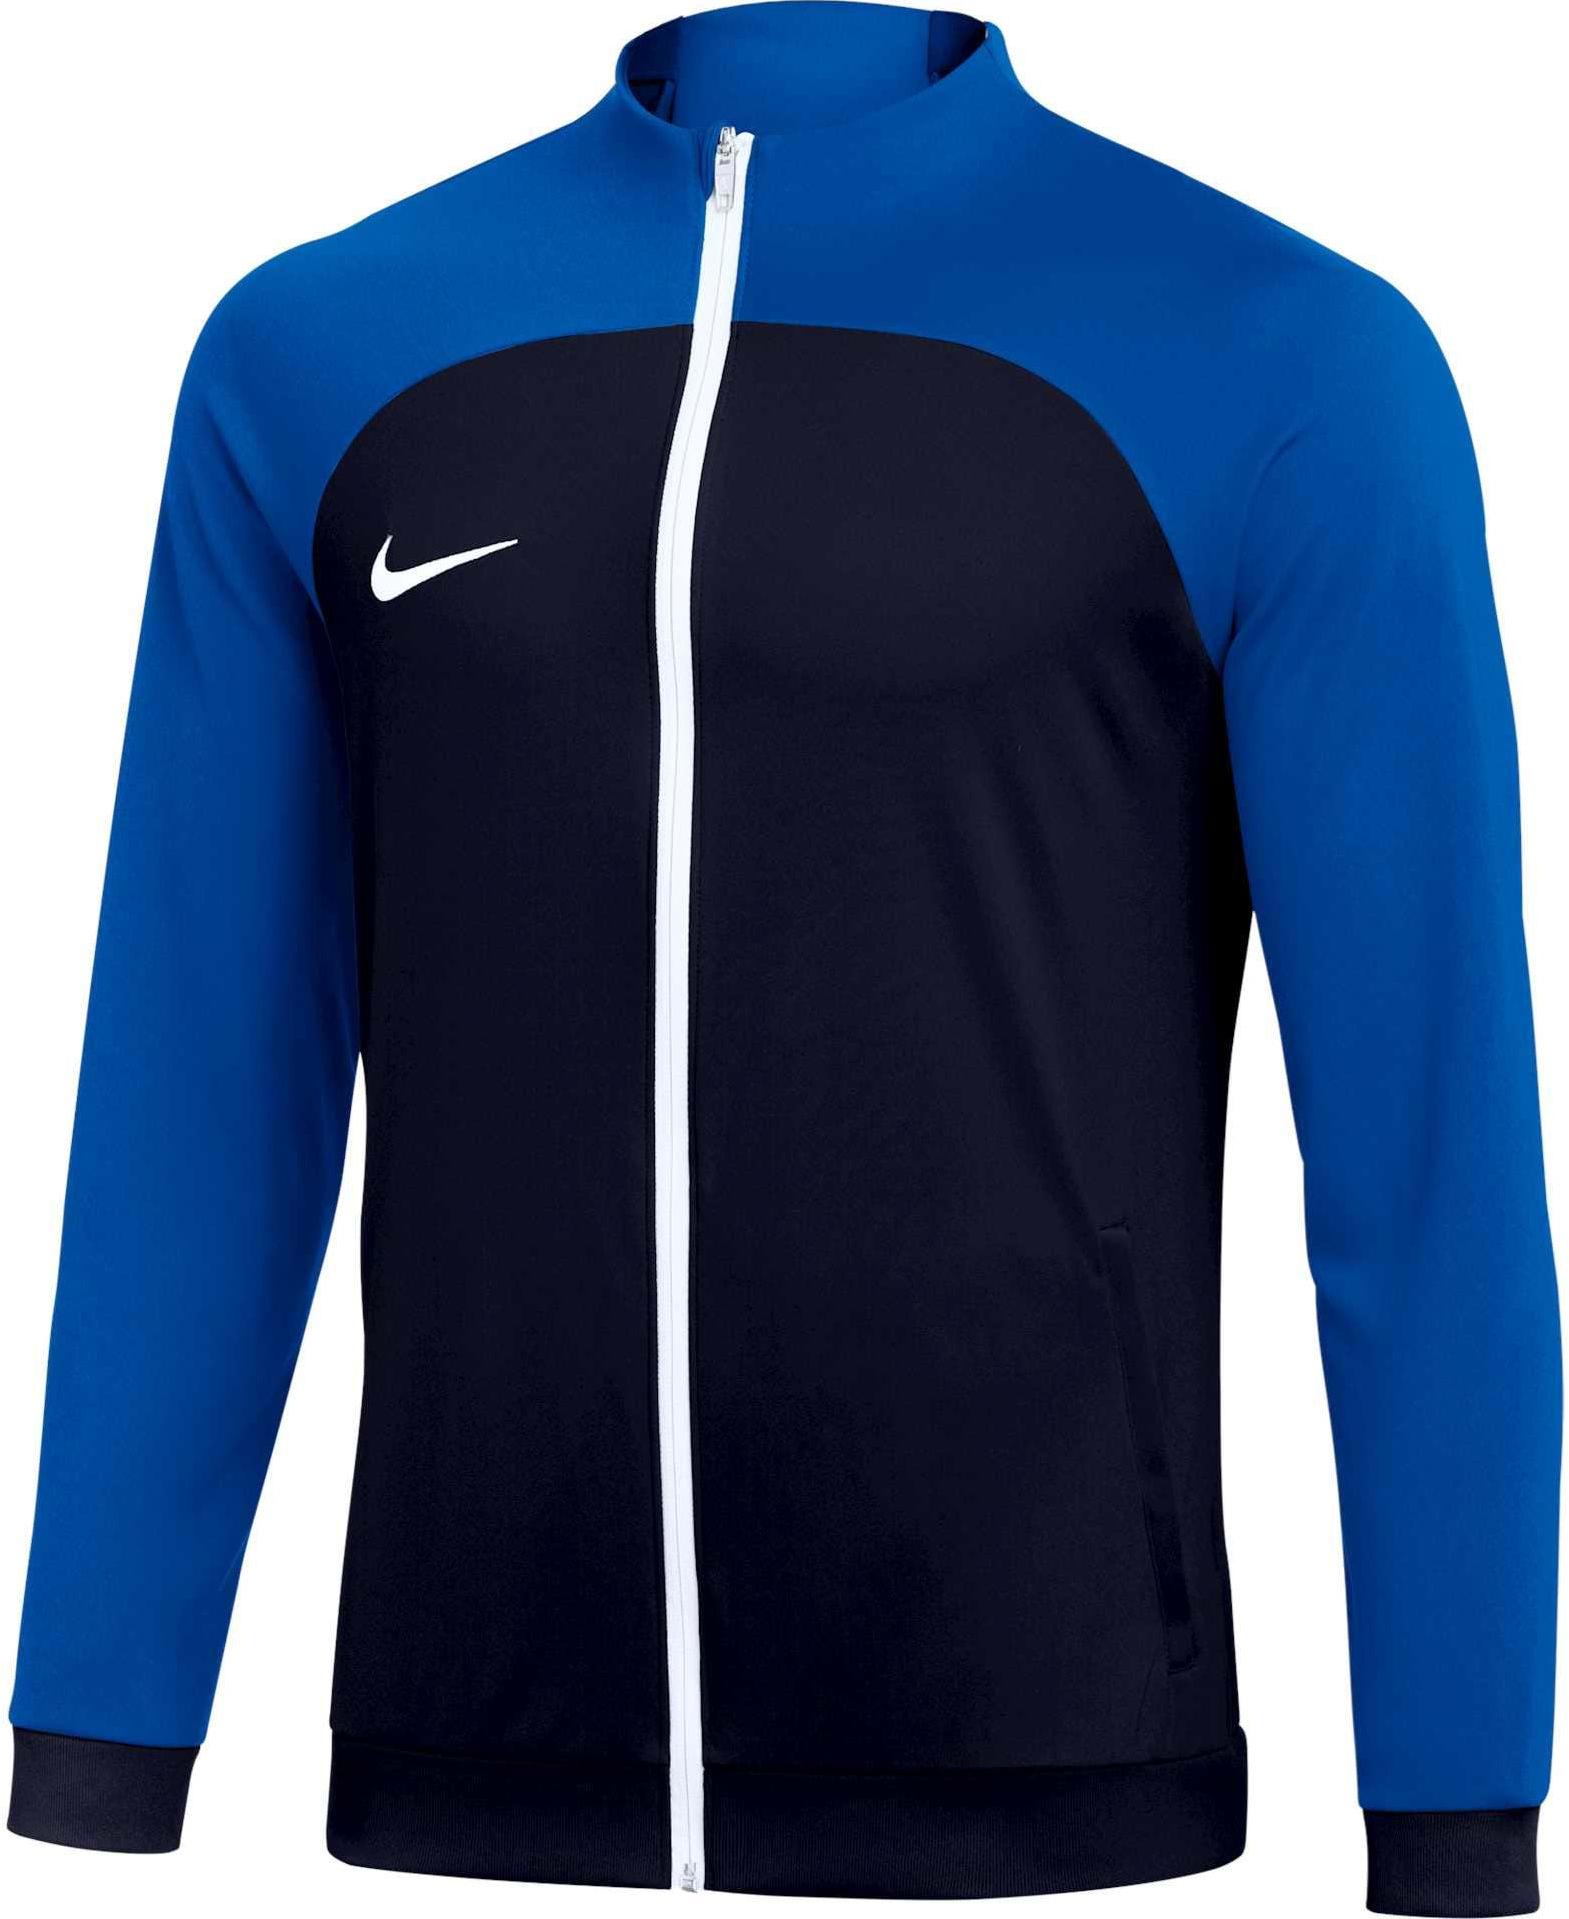 Casaco Nike Academy Pro Training Jacket